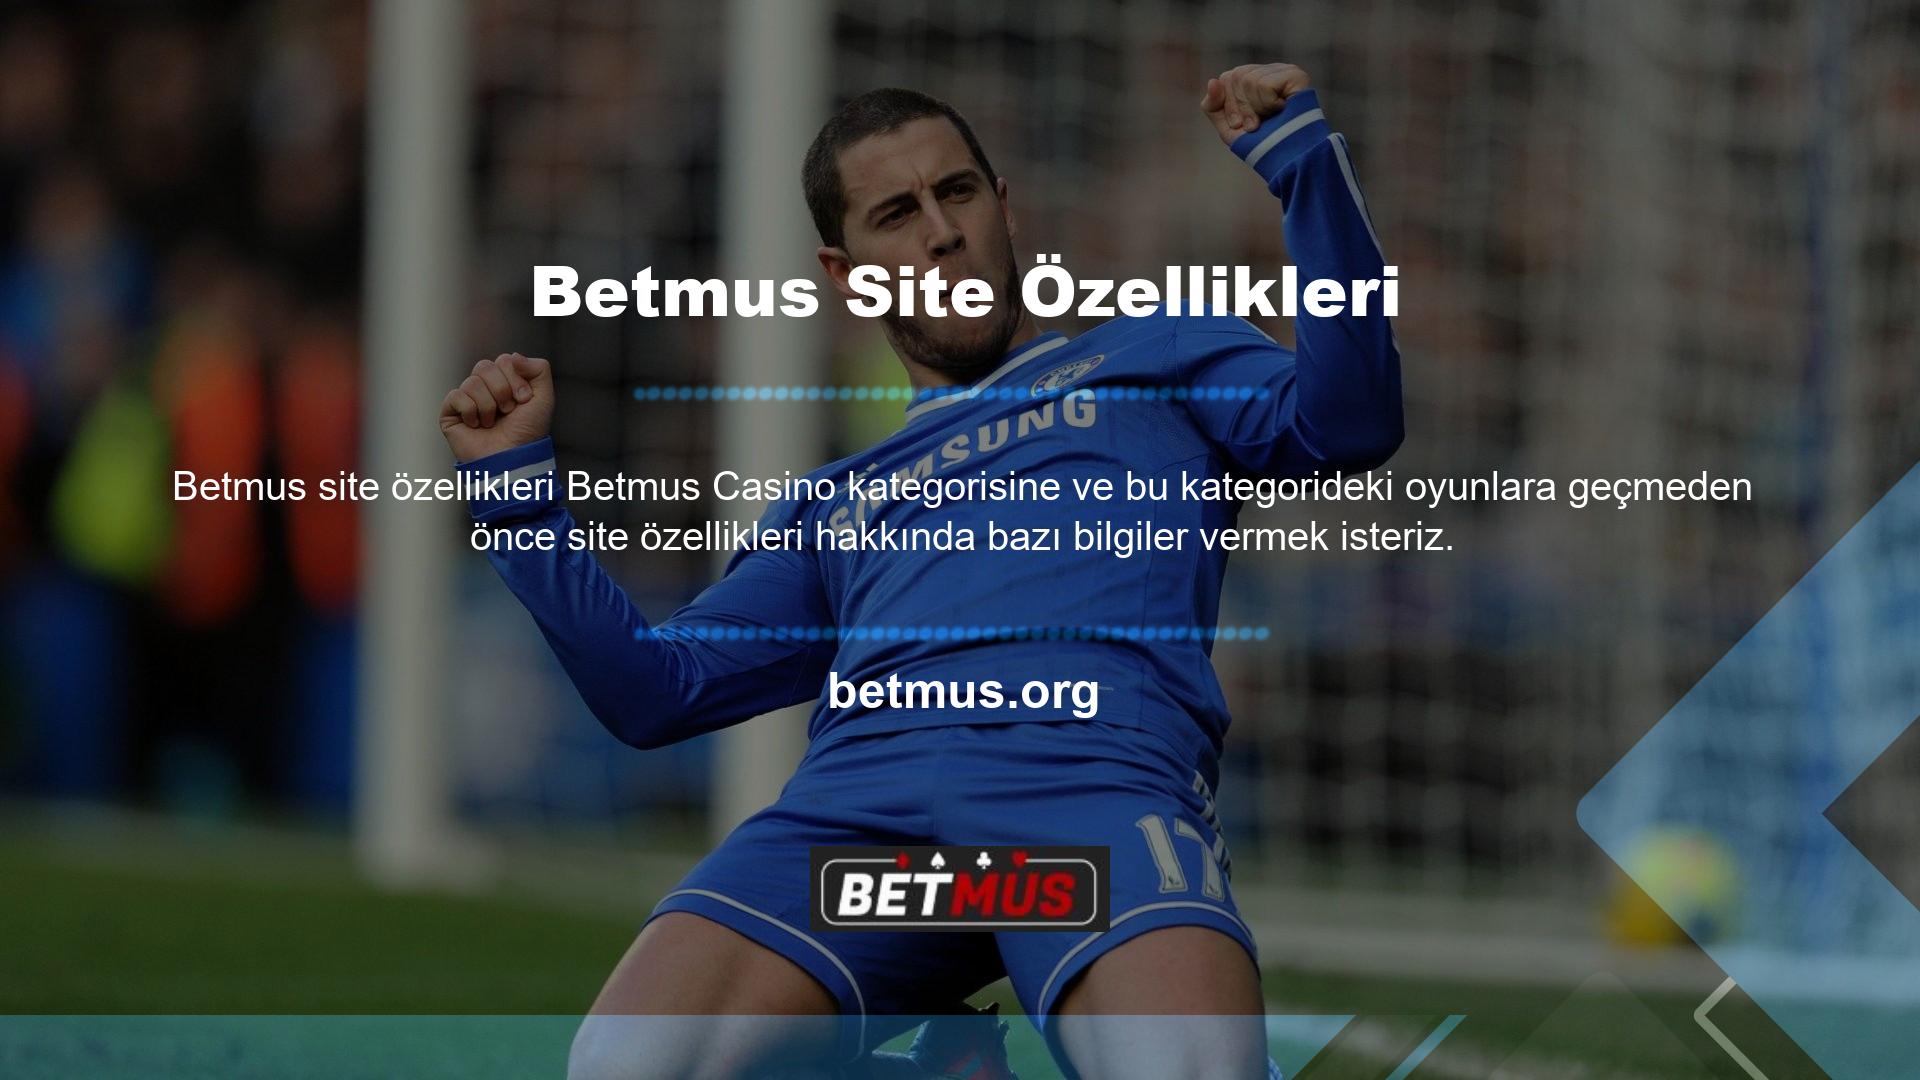 Betmus web sitesi ülkemizde hem casino kategorisini hem de spor sektörünü kapsayan yasa dışı bir casino sitesidir